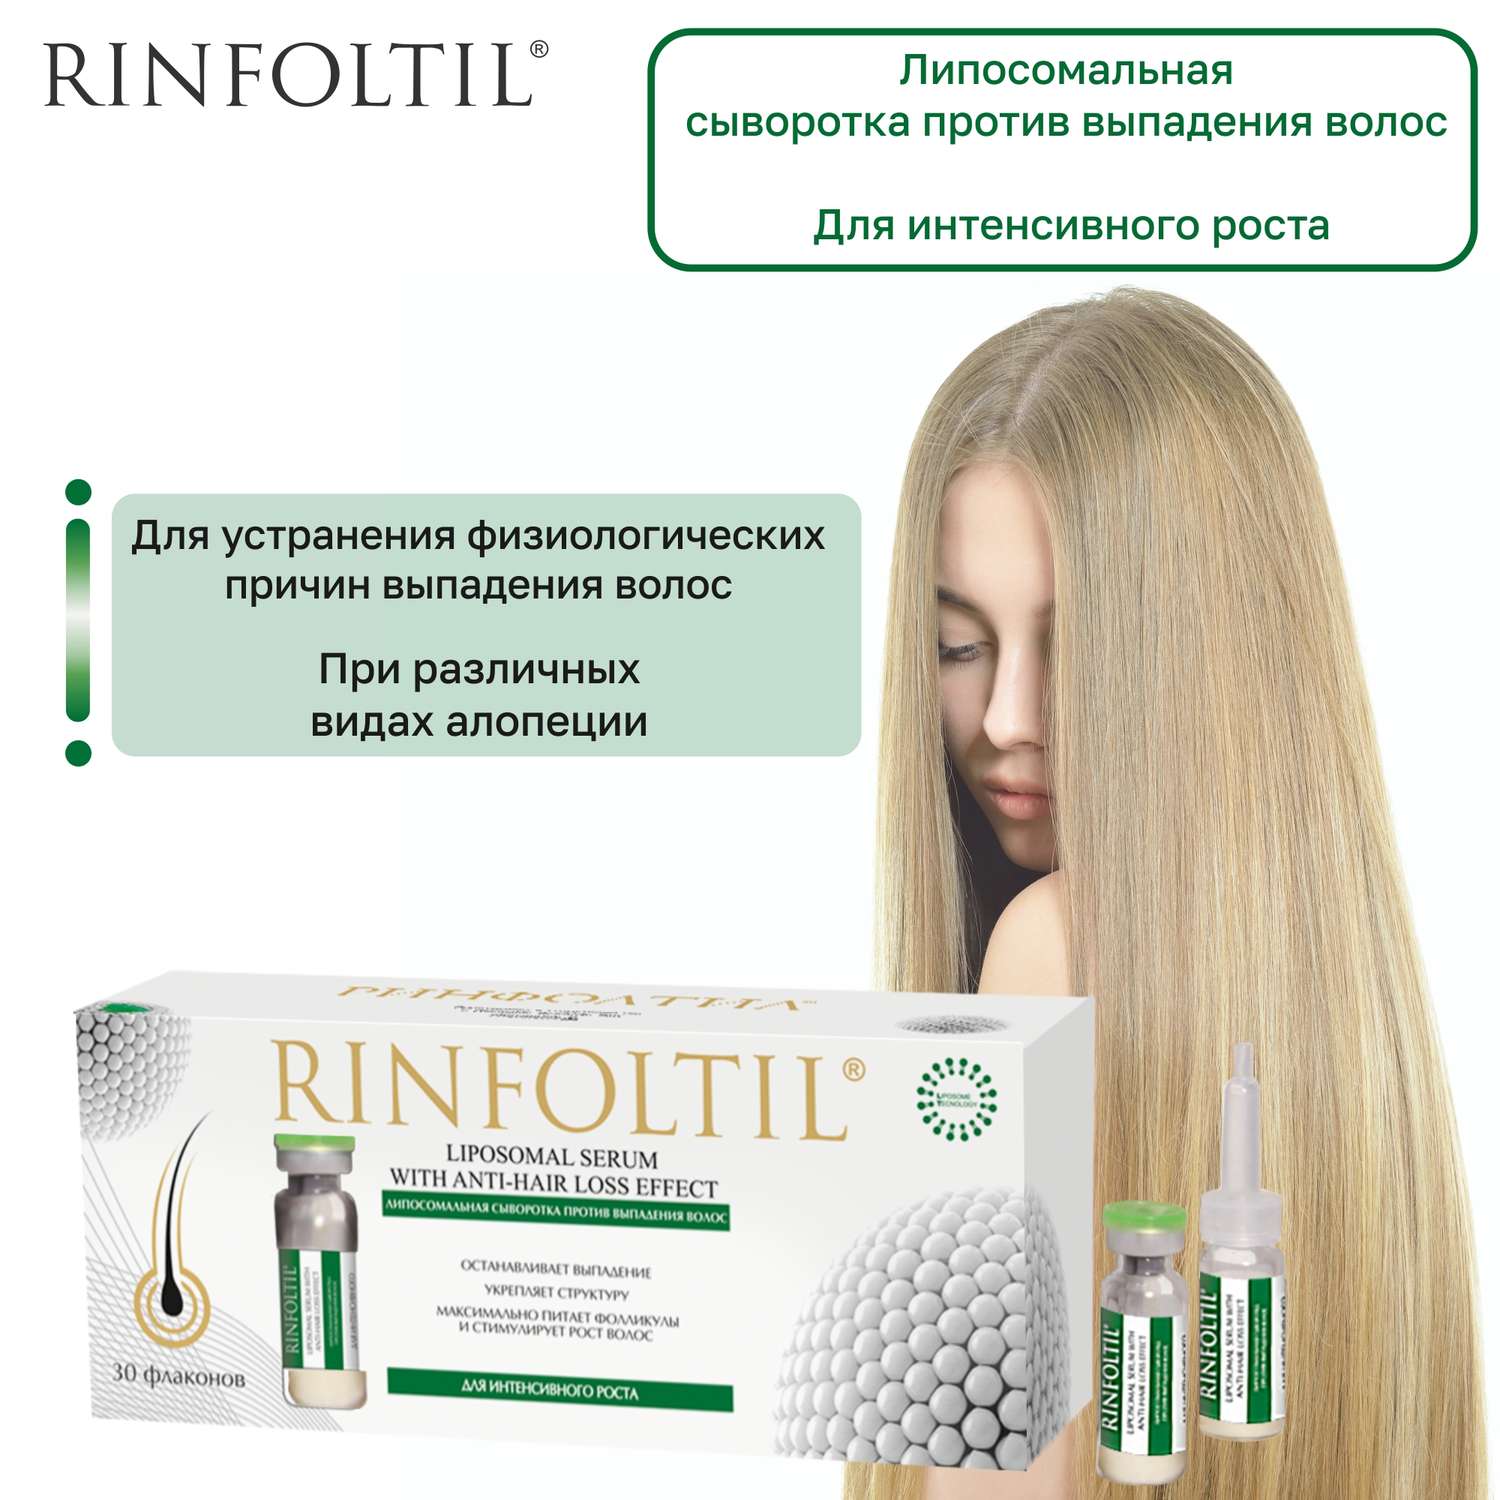 Сыворотка Rinfoltil Липосомальная против выпадения волос. Для интенсивного роста - фото 3